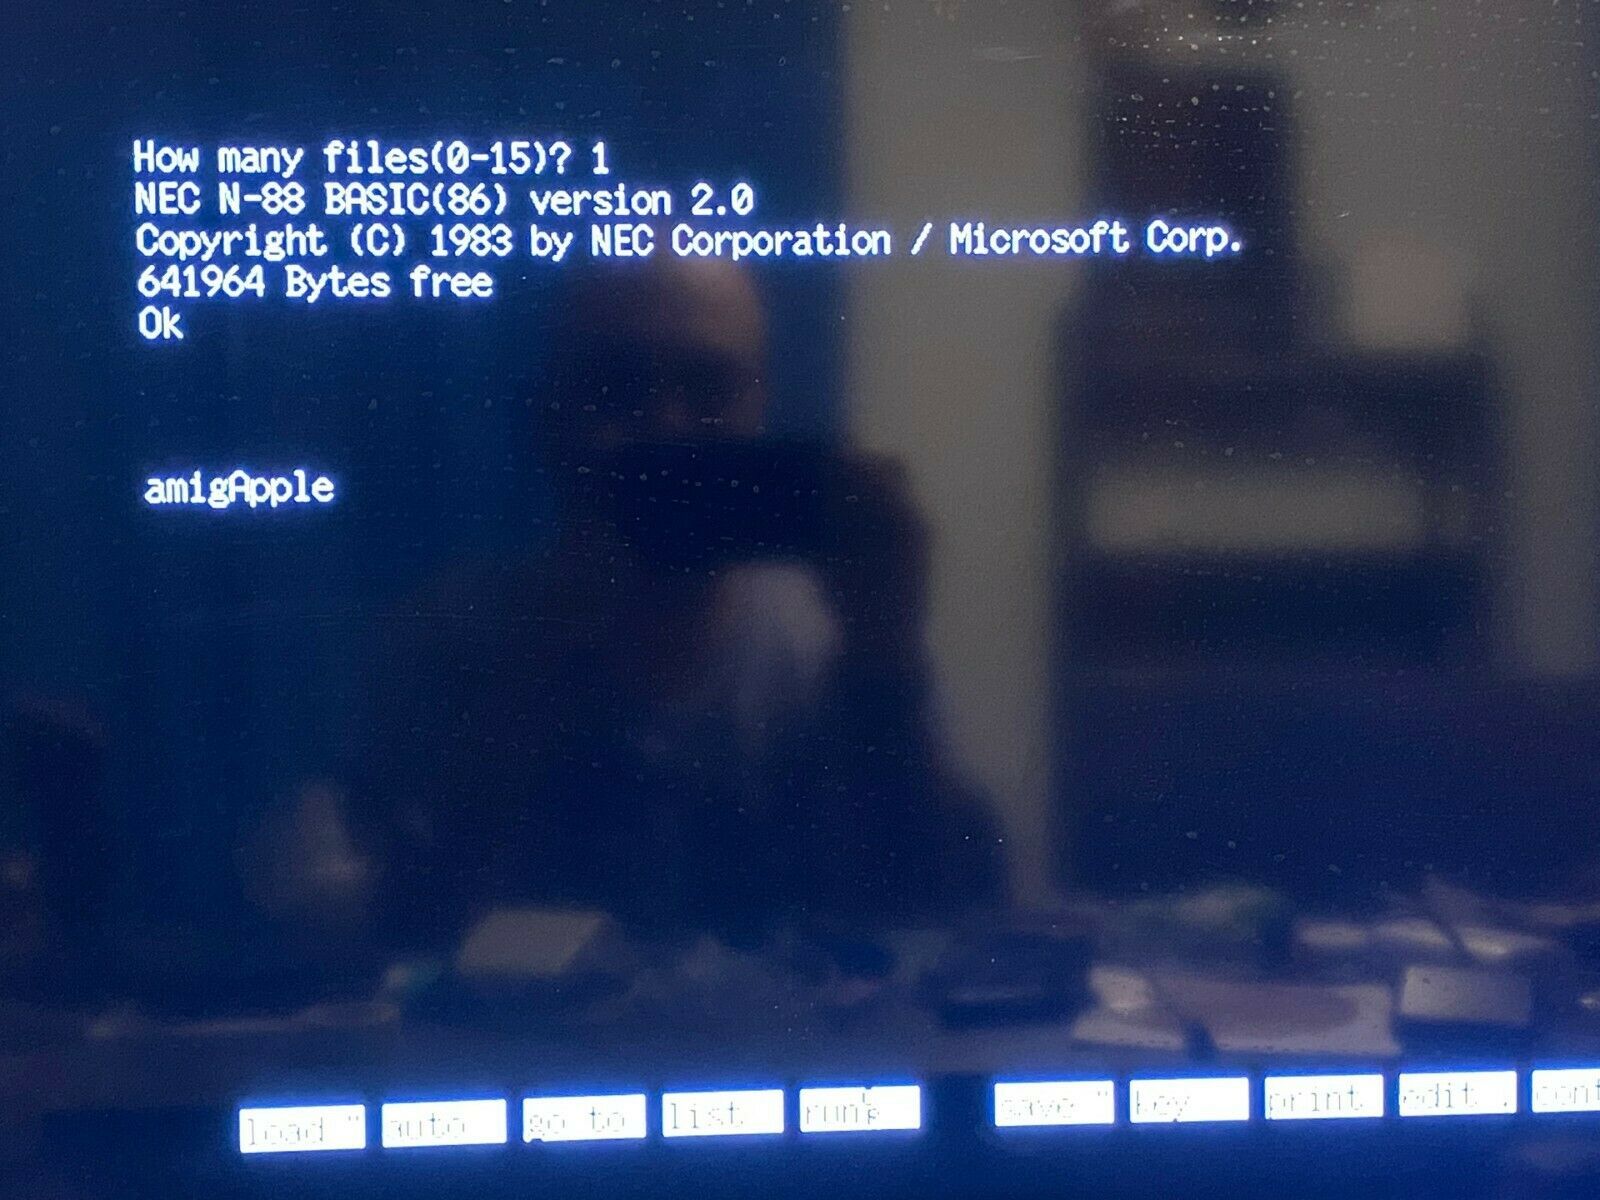 NEC PC 9800 N-88 32GB Microsd Card Hard Drive for Raspberry Pi 2-3